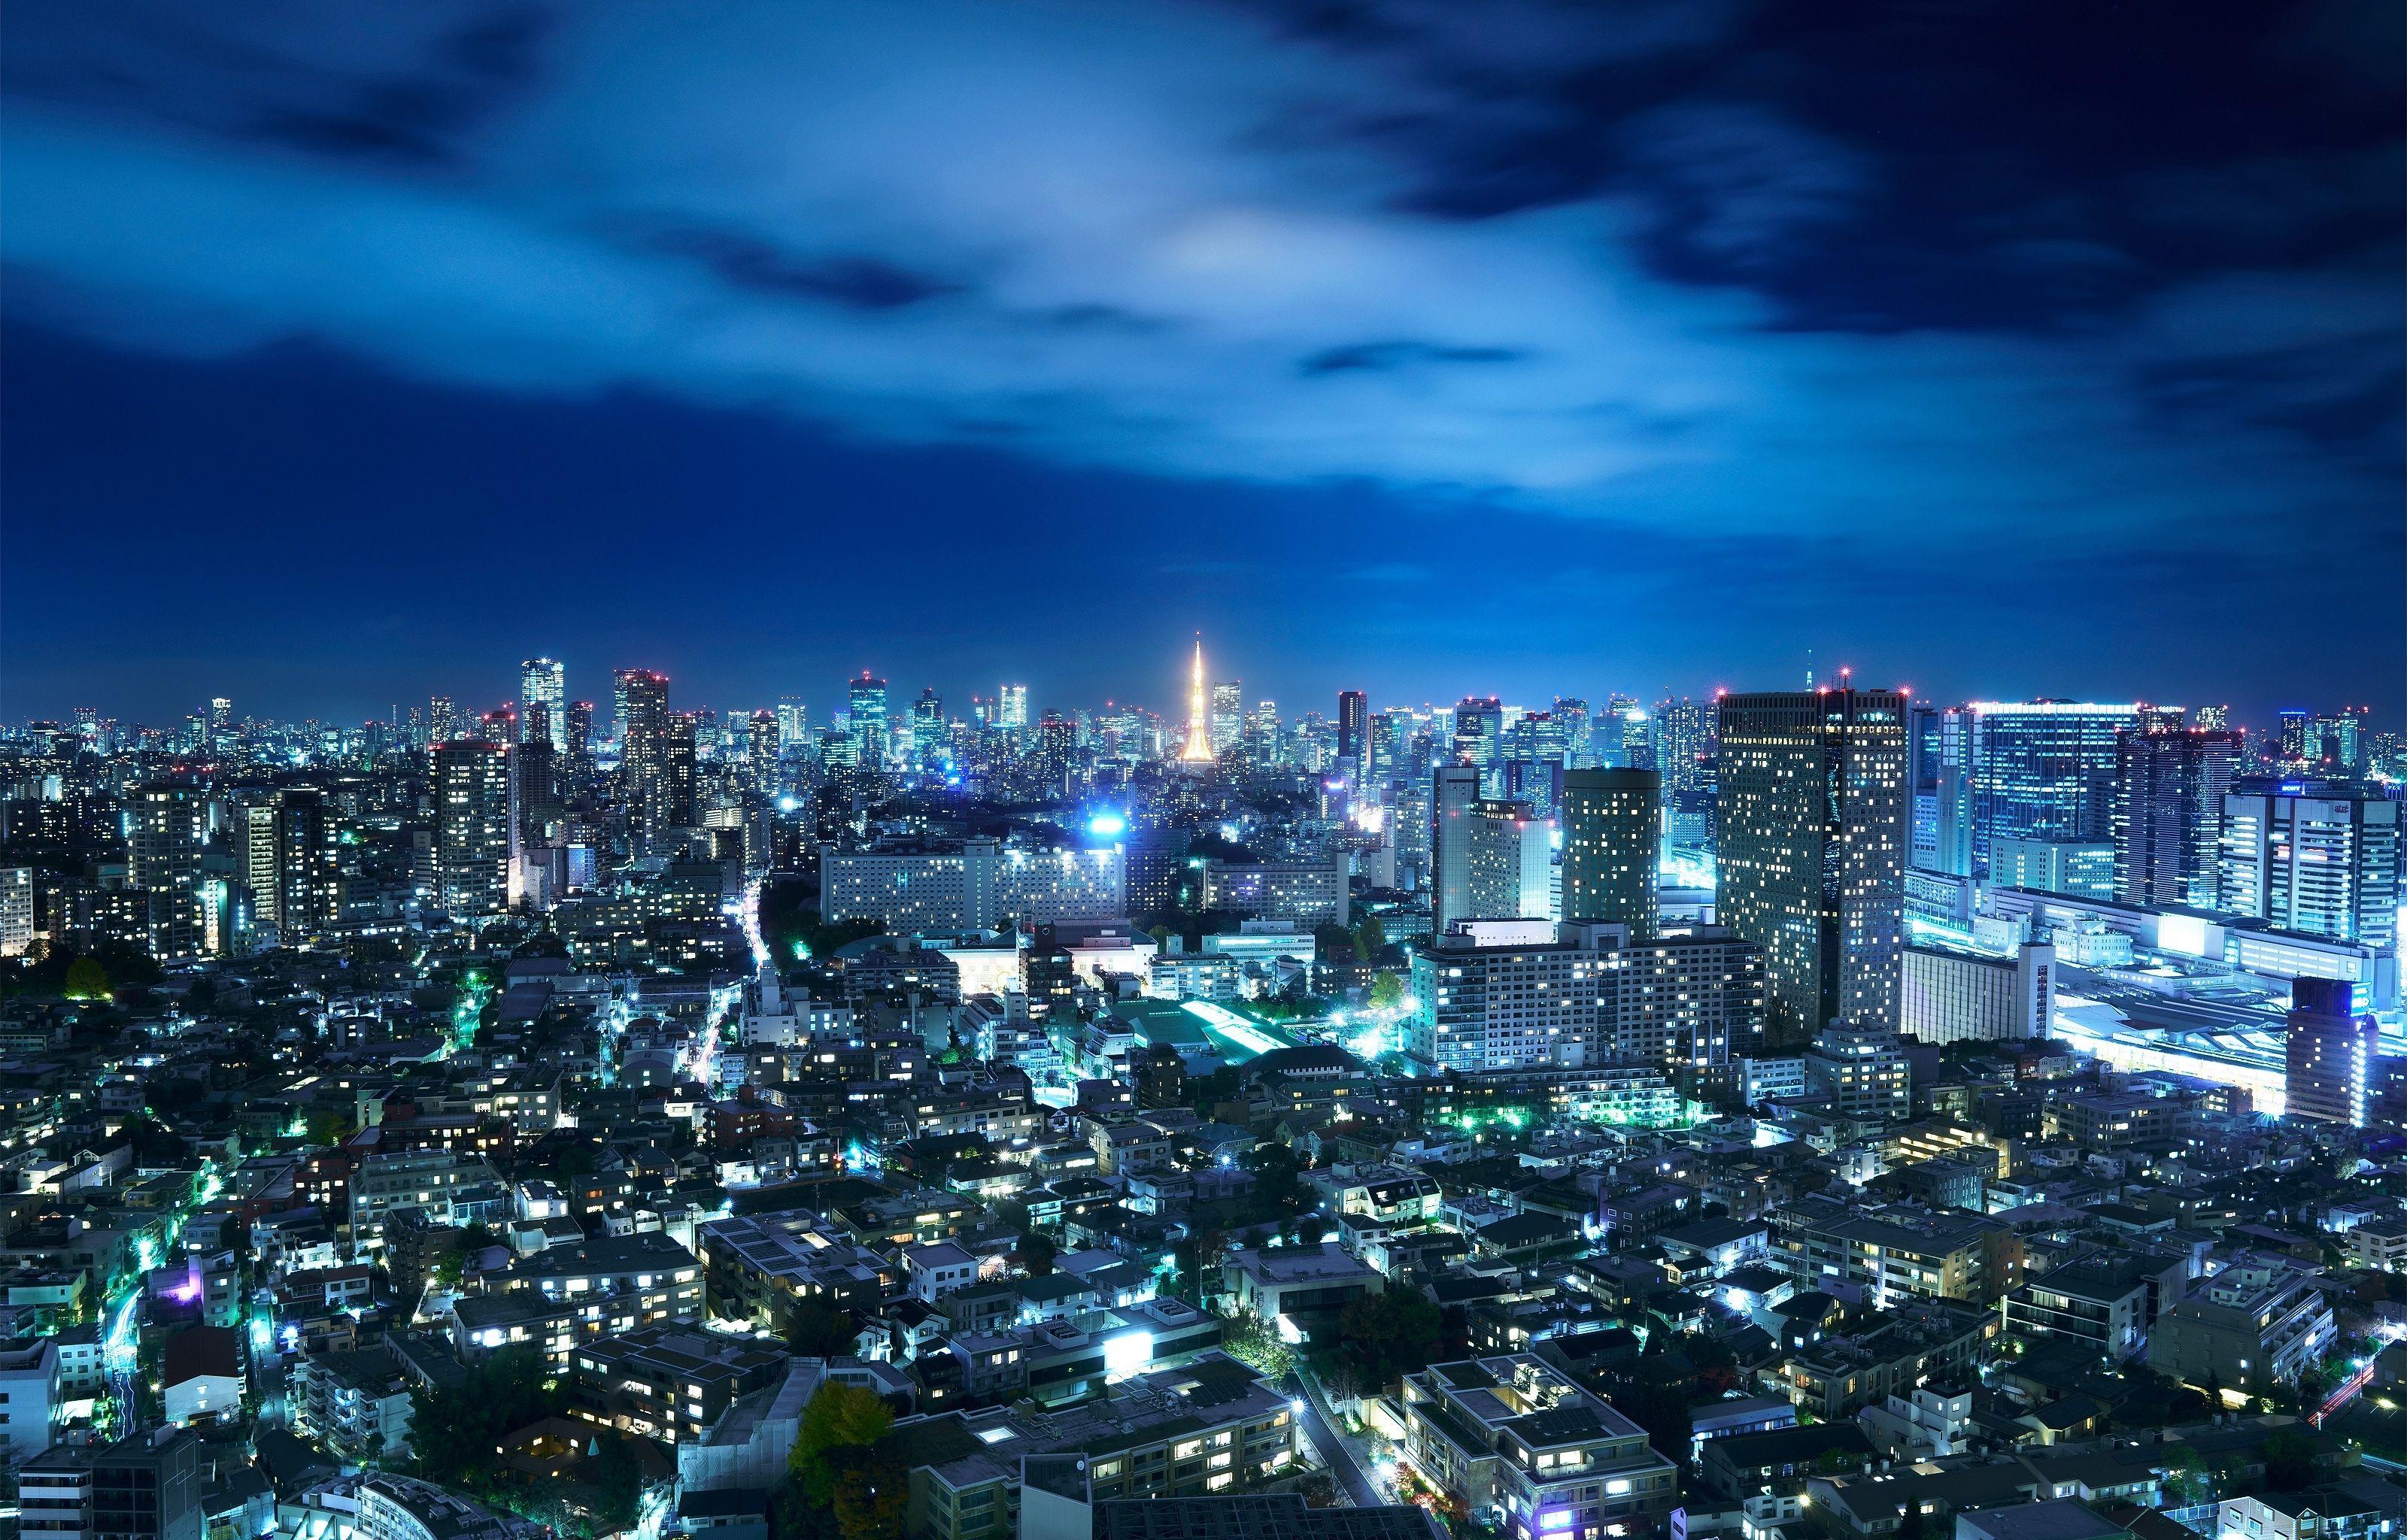 Japan Tokyo At Night Wallpapers - Top Free Japan Tokyo At Night